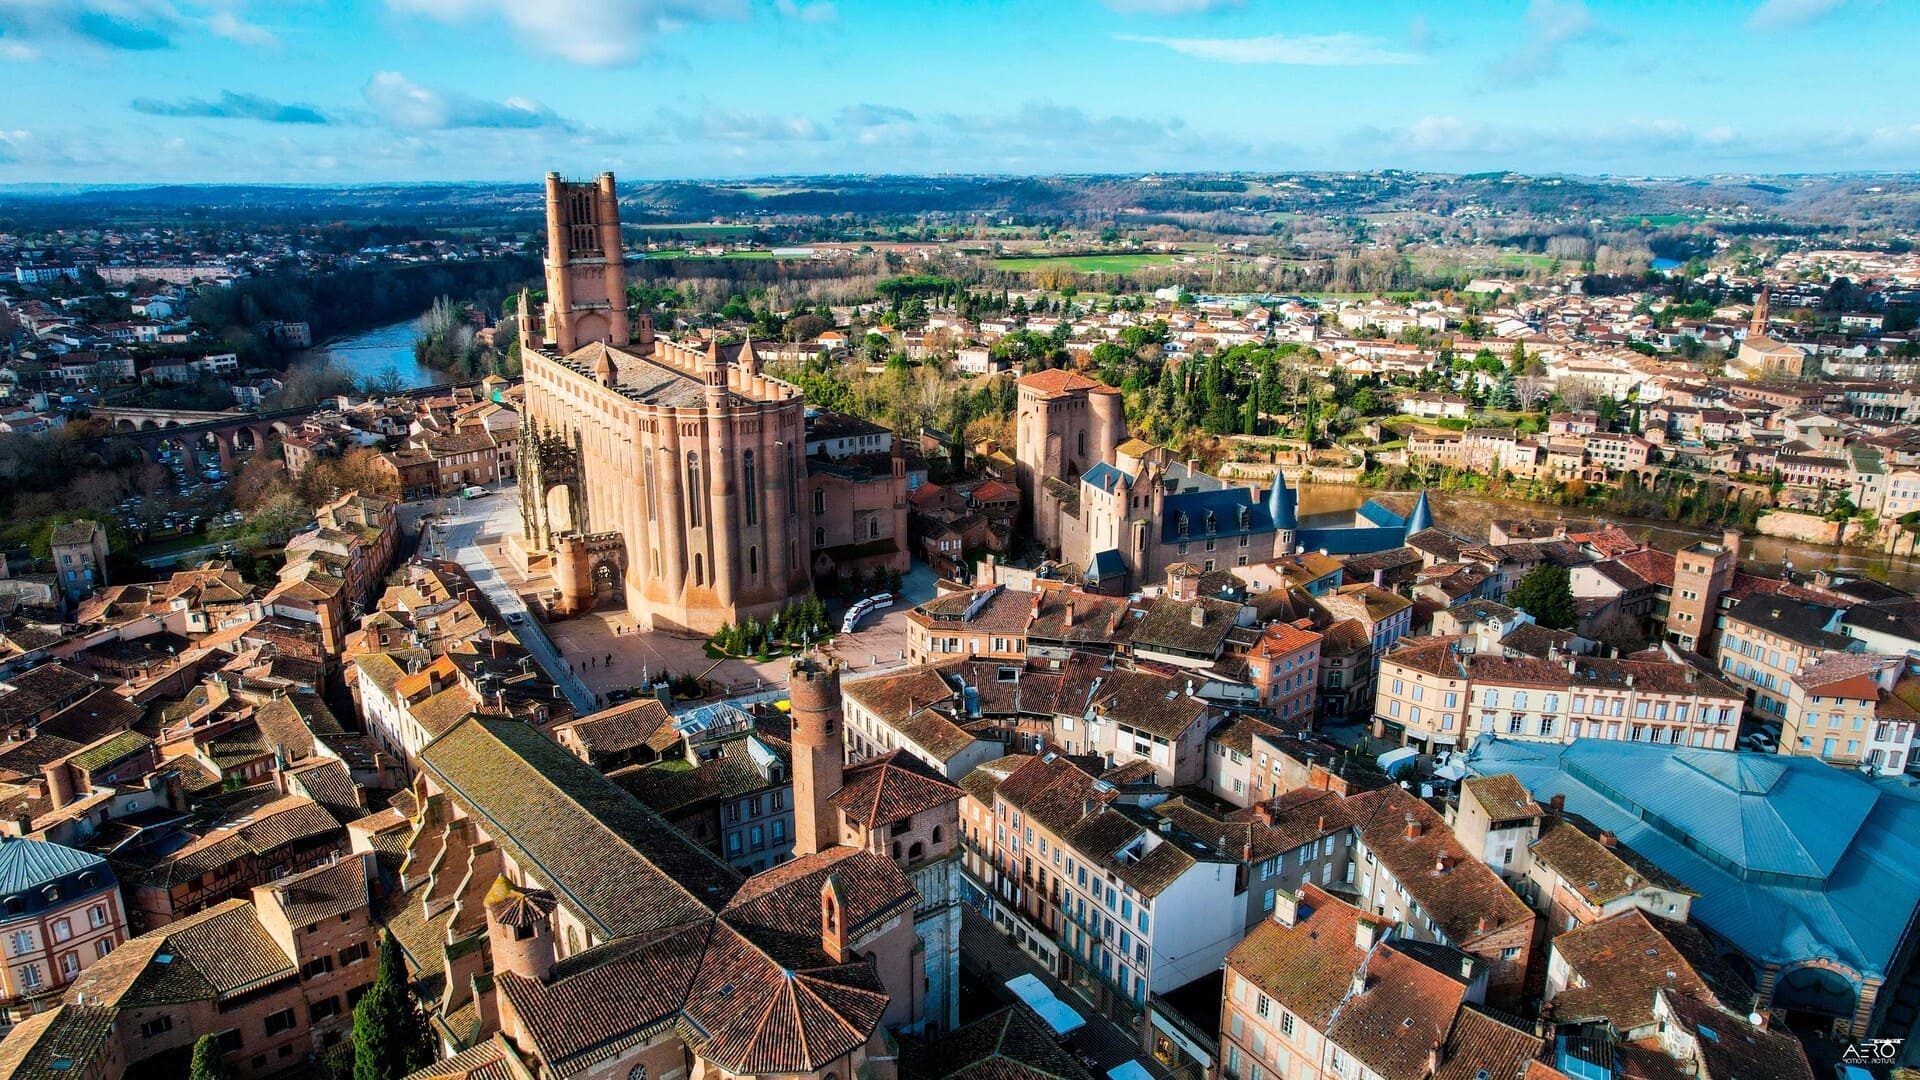 Sobrevuela Albi y el perímetro declarado Patrimonio de la Humanidad: sobre los tejados la catedral, la colegiata de Saint-Salvi, el palacio BErbie, el mercado cubierto